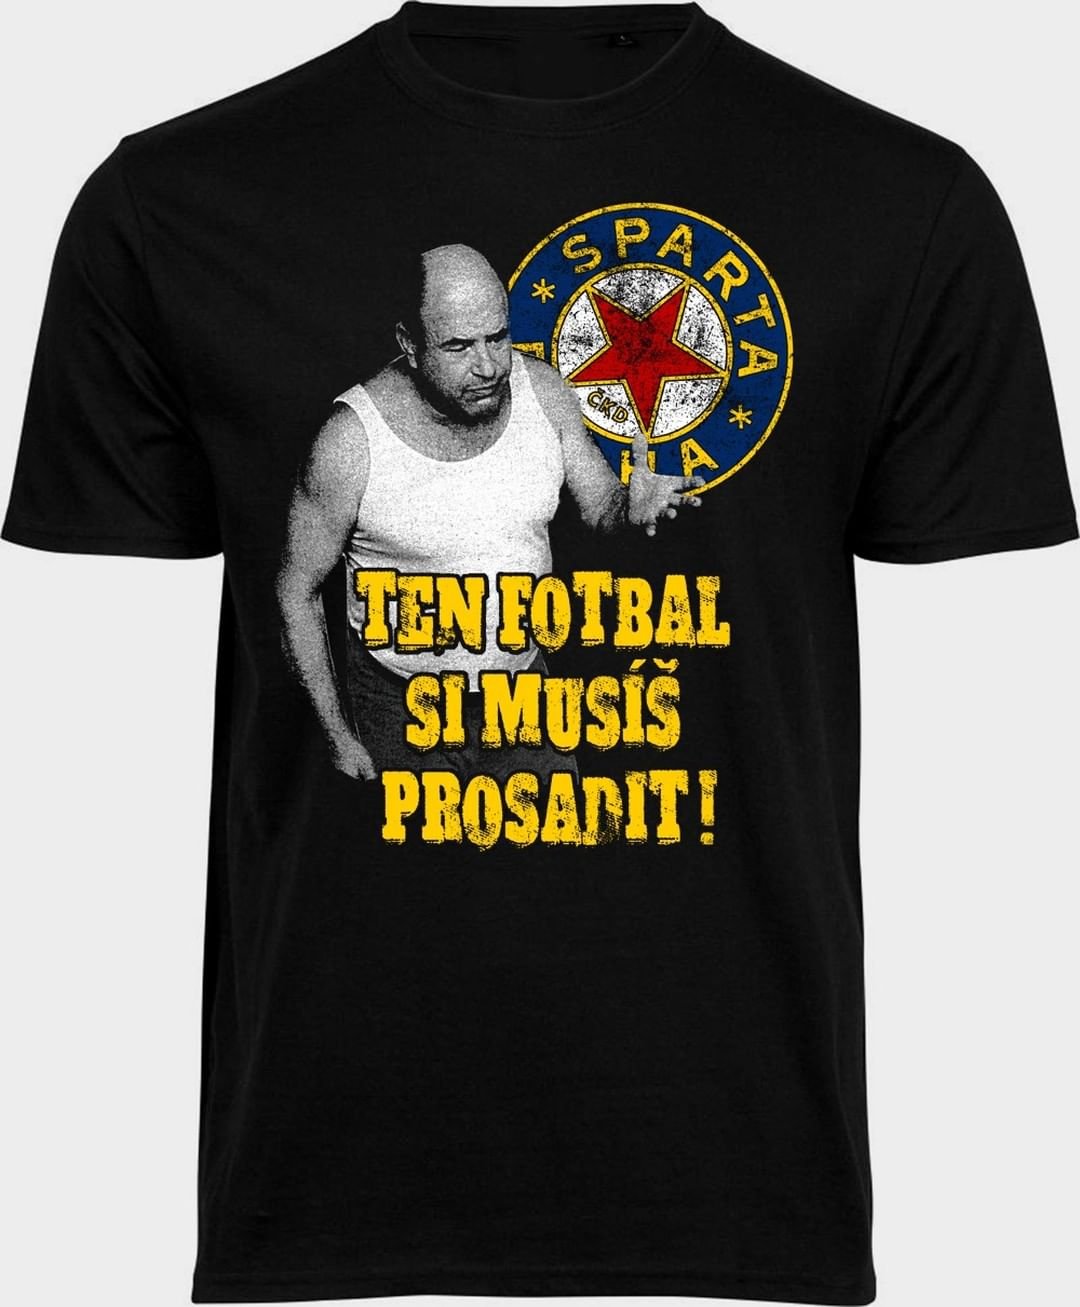 Populární homolkovské tričko "Ten fotbal si musíš prosadit" opět naskladněno ve šech velikostech...až do 5XL ? K dostání jak v prodejně Stylsport v Havanské ulici 12 na Letné, tak v našem eshopu @eshopspartani 
 www.spartani.cz ???? #acsparta #spartaforever #homolkaboys #ultrassparta #stylsport